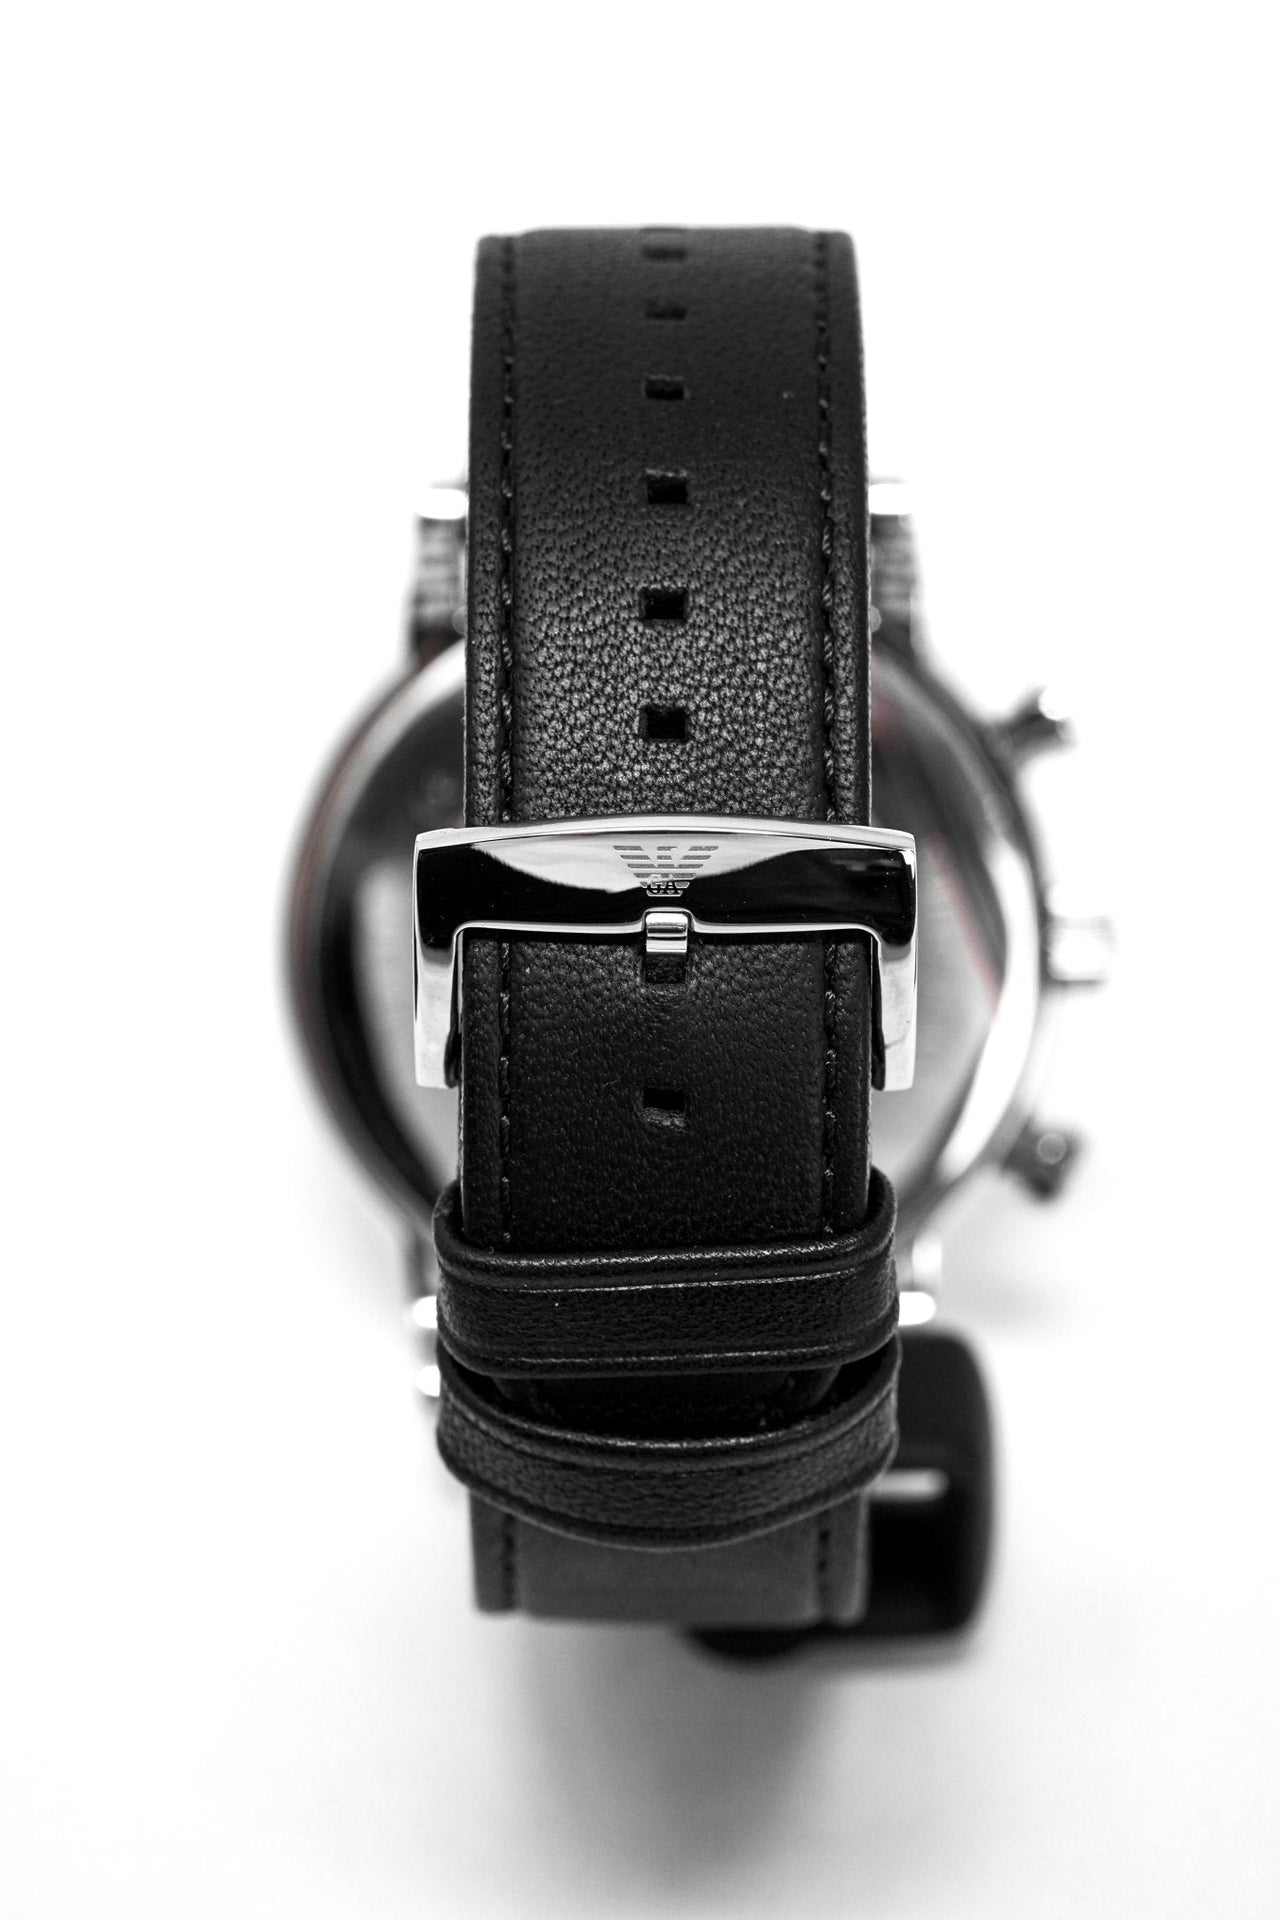 Emporio Armani Men's Luigi Chronograph Watch AR1828 - Watches & Crystals